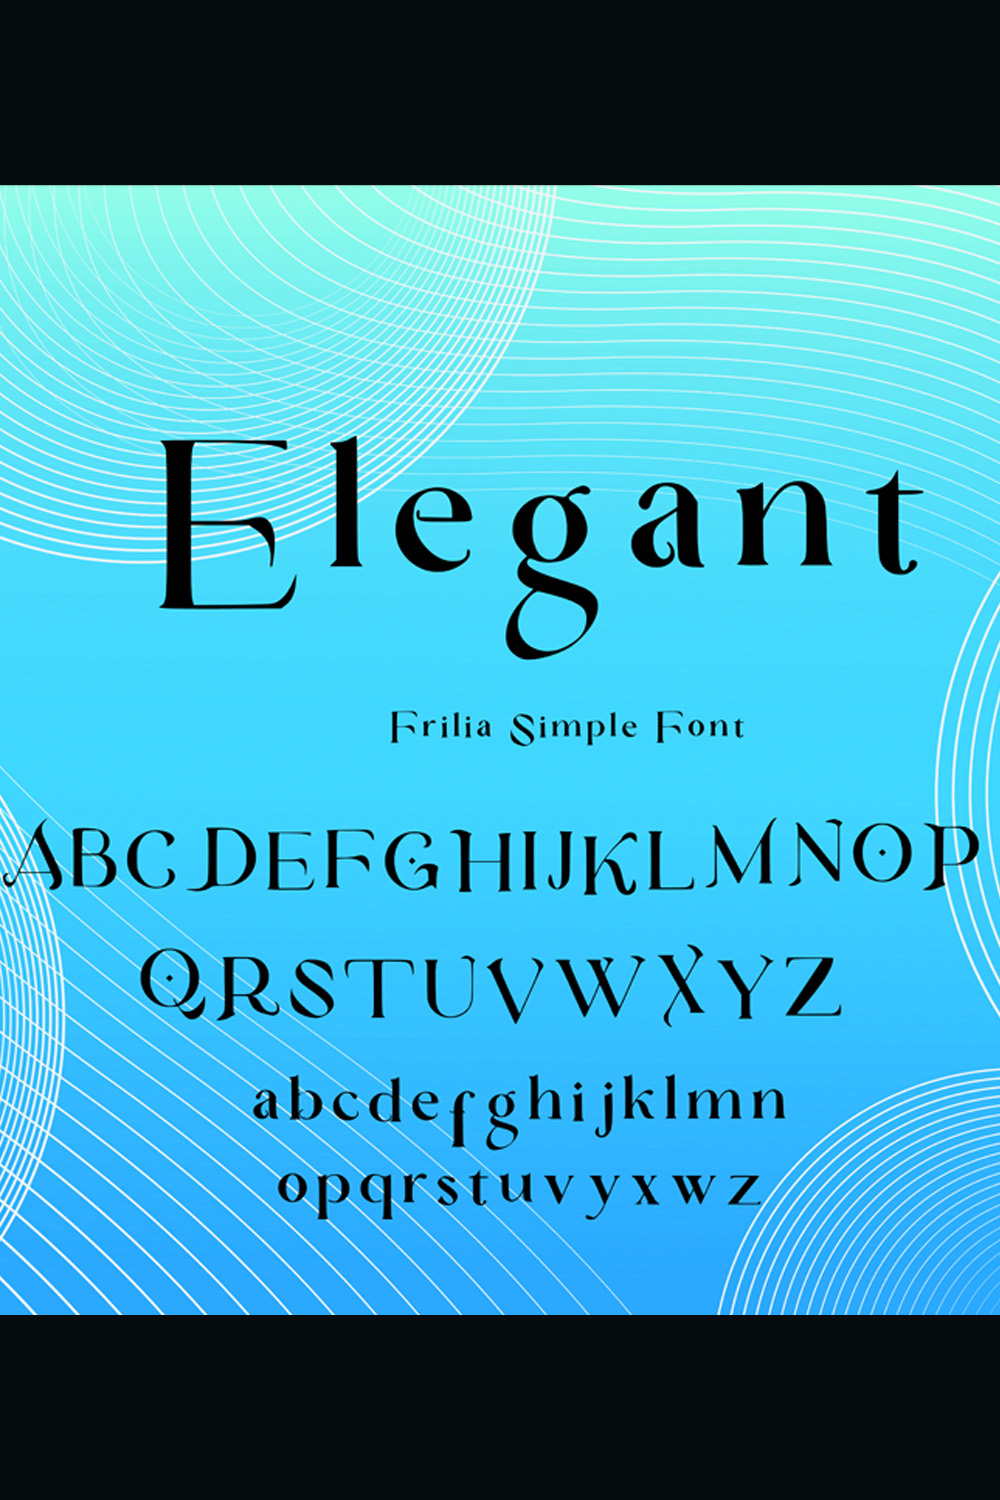 Frilia Simple Font - Elegant pinterest preview image.